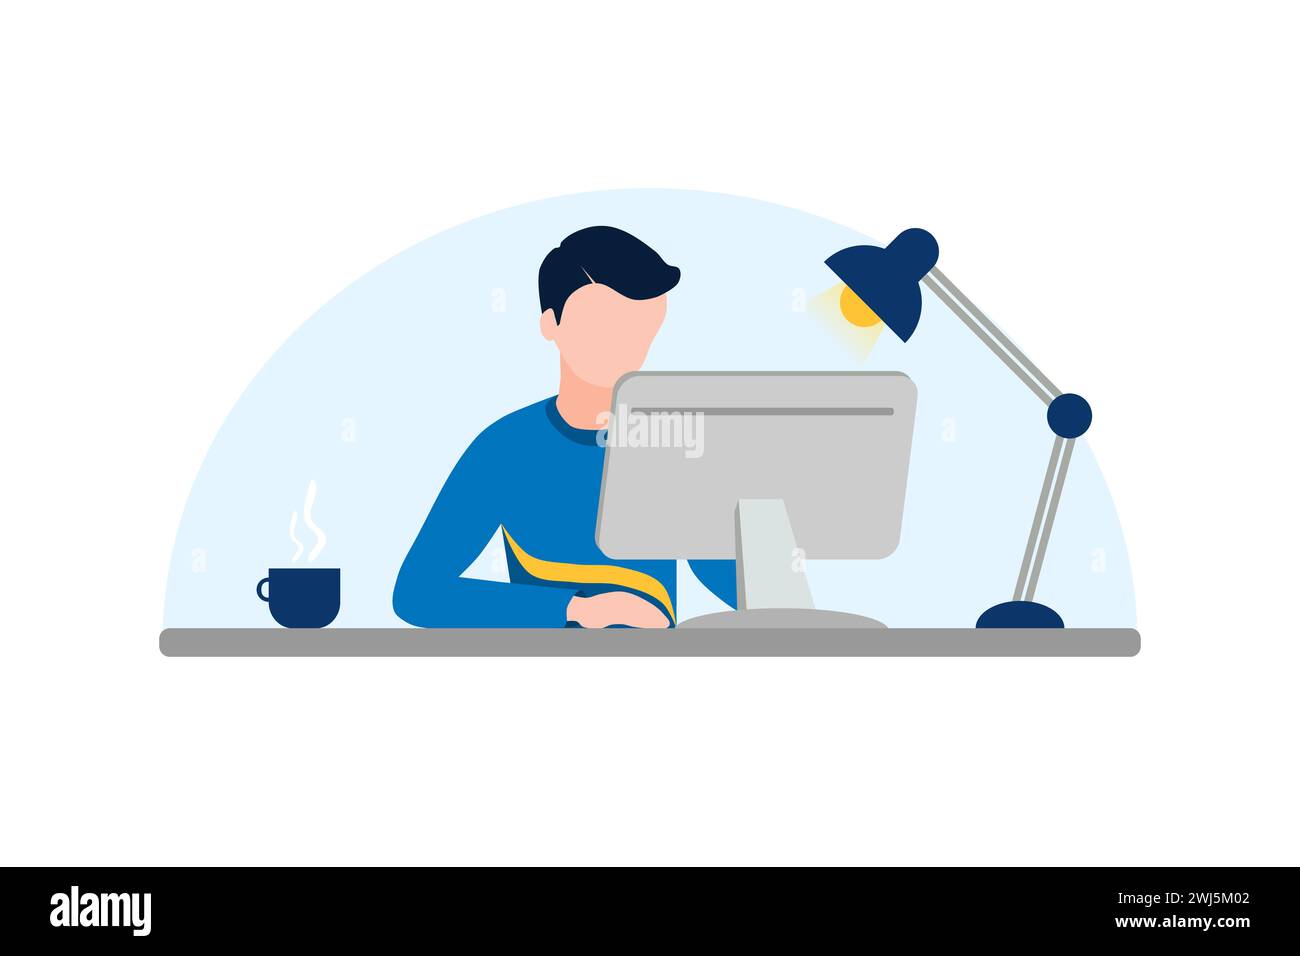 Uomo senza volto che lavora con un PC desktop. Illustrazione in stile piatto vettoriale per lavorare a casa. Illustrazione Vettoriale